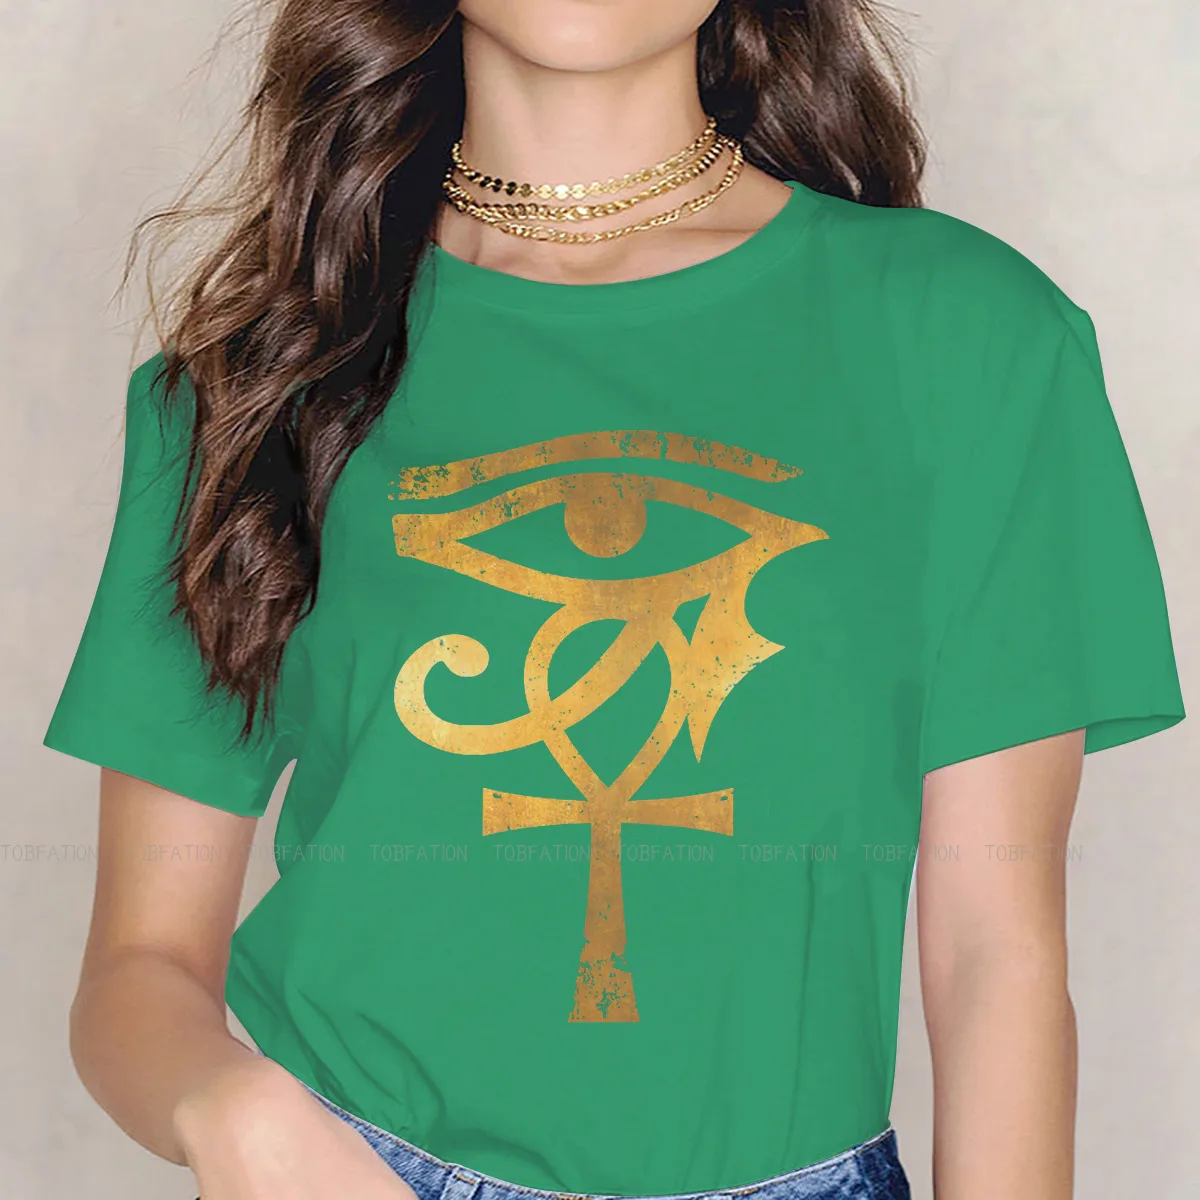 Футболка в стиле Archaeologist Gold для девочки, египетский глаз Гора Анкх, удобная футболка с графическим рисунком нового дизайна, материал Ofertas